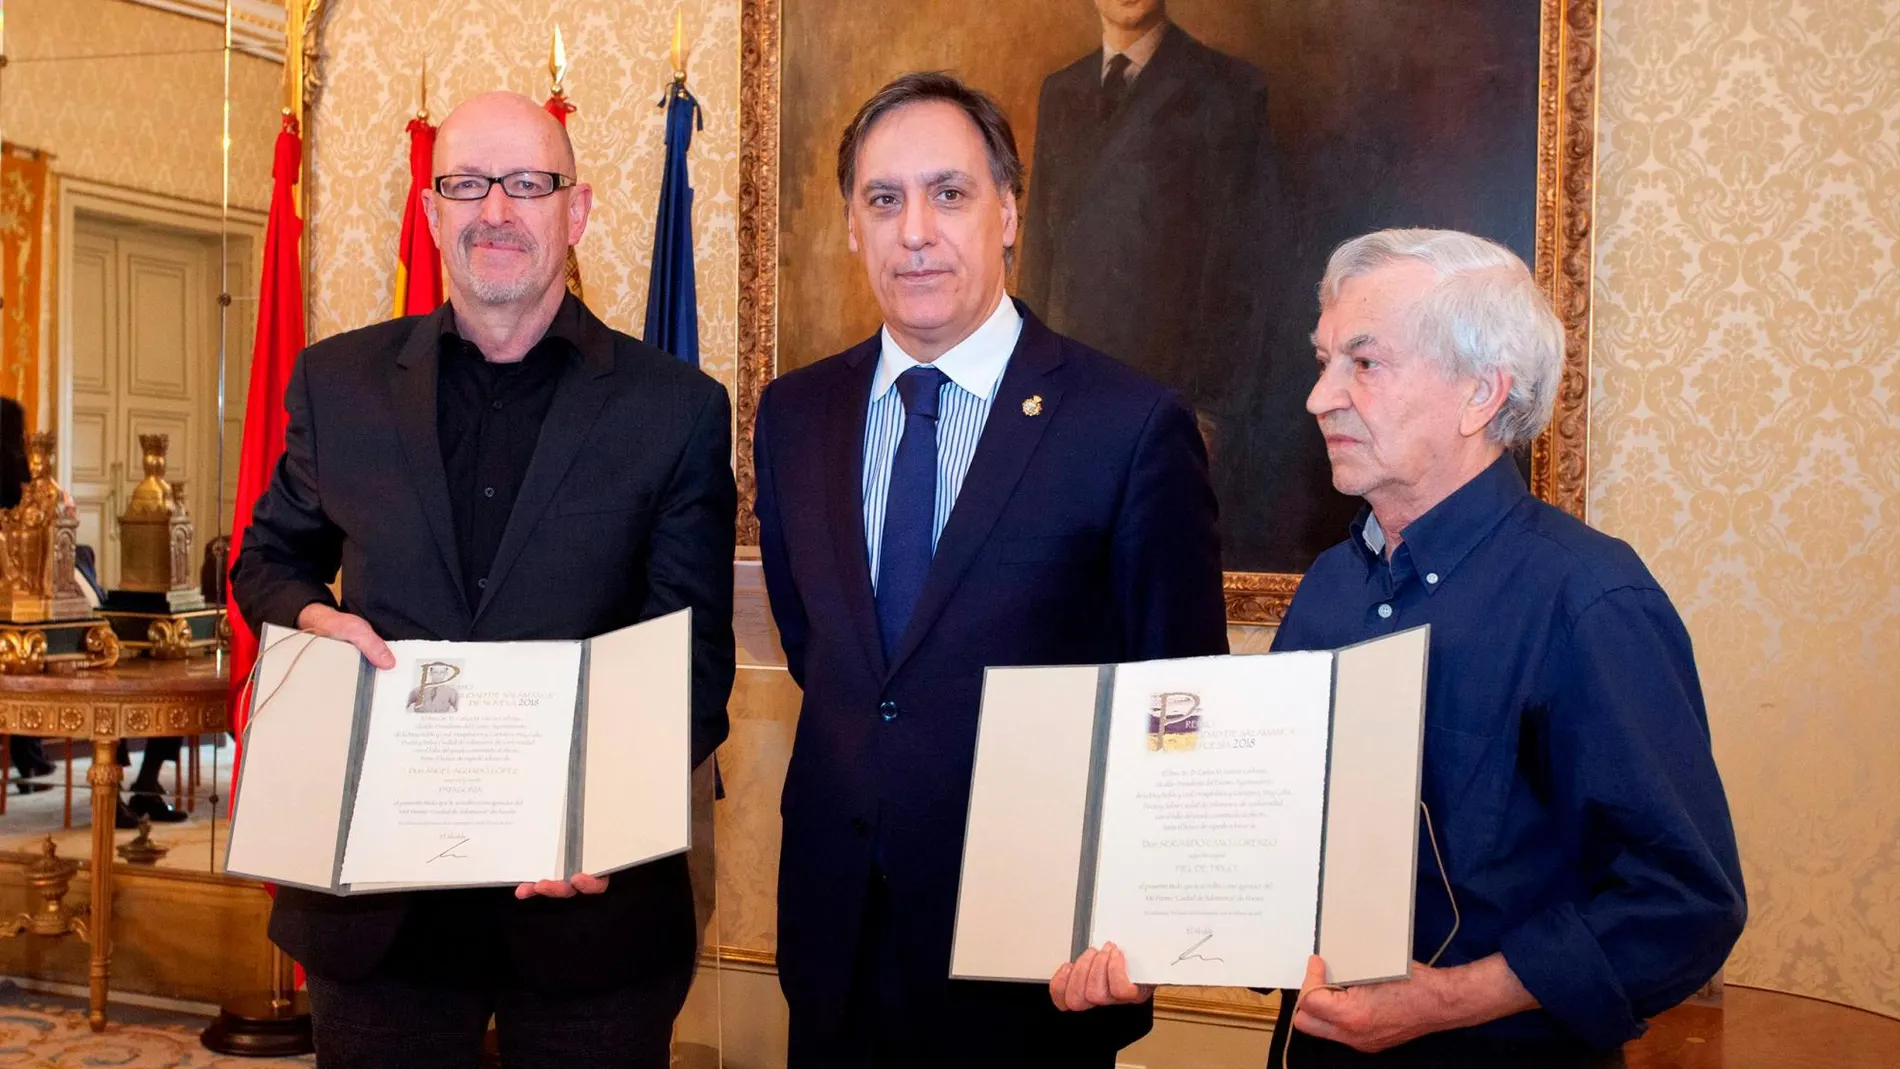 El alcalde Carlos García Carbayo con los premiados, Servando Cano y Ángel Aguado